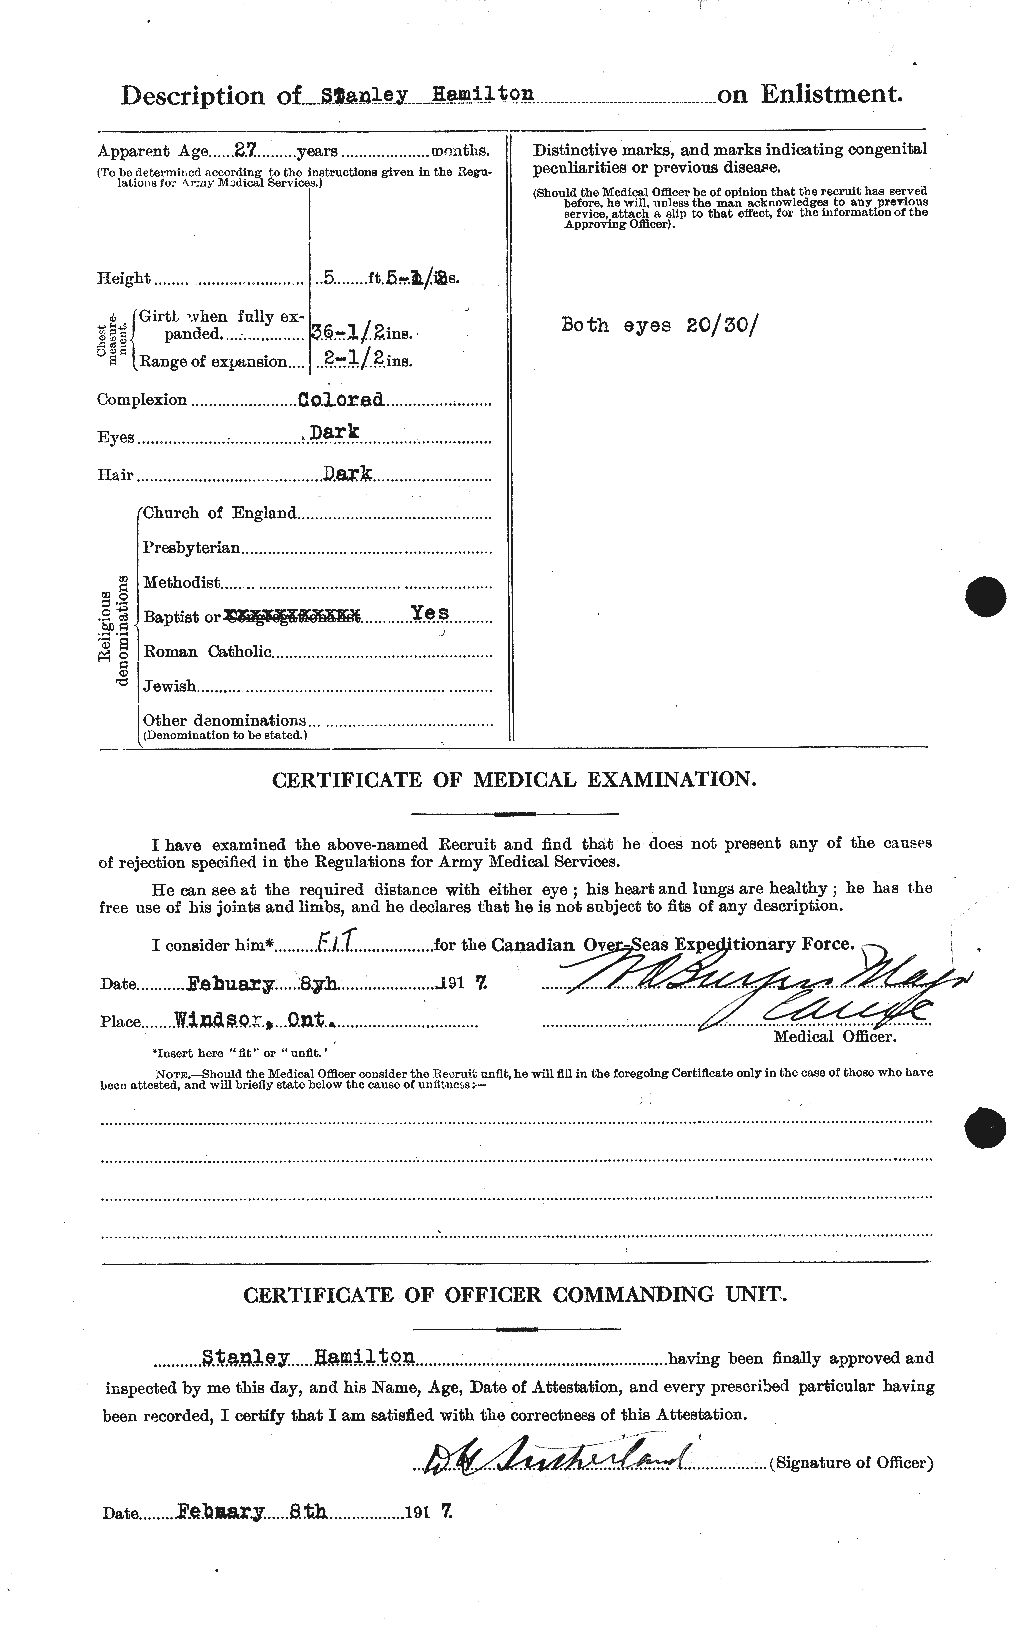 Dossiers du Personnel de la Première Guerre mondiale - CEC 373315b